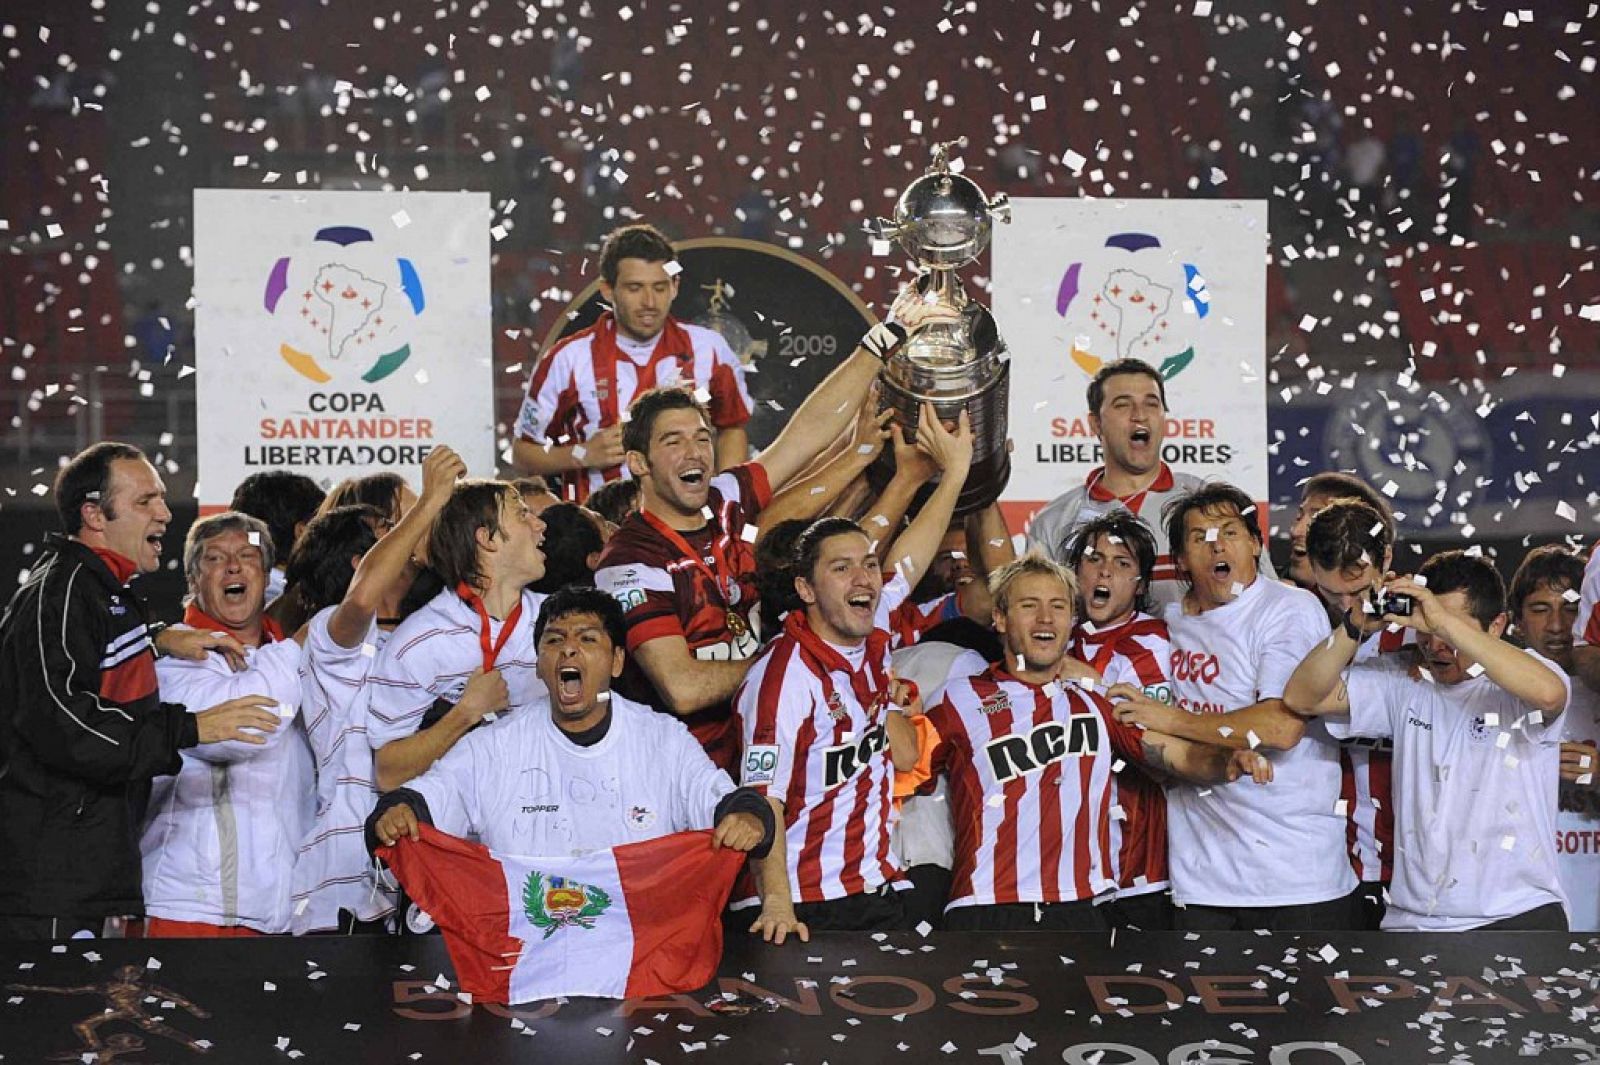 Los argentinos son campeones de la Copa Libertadores 2009.